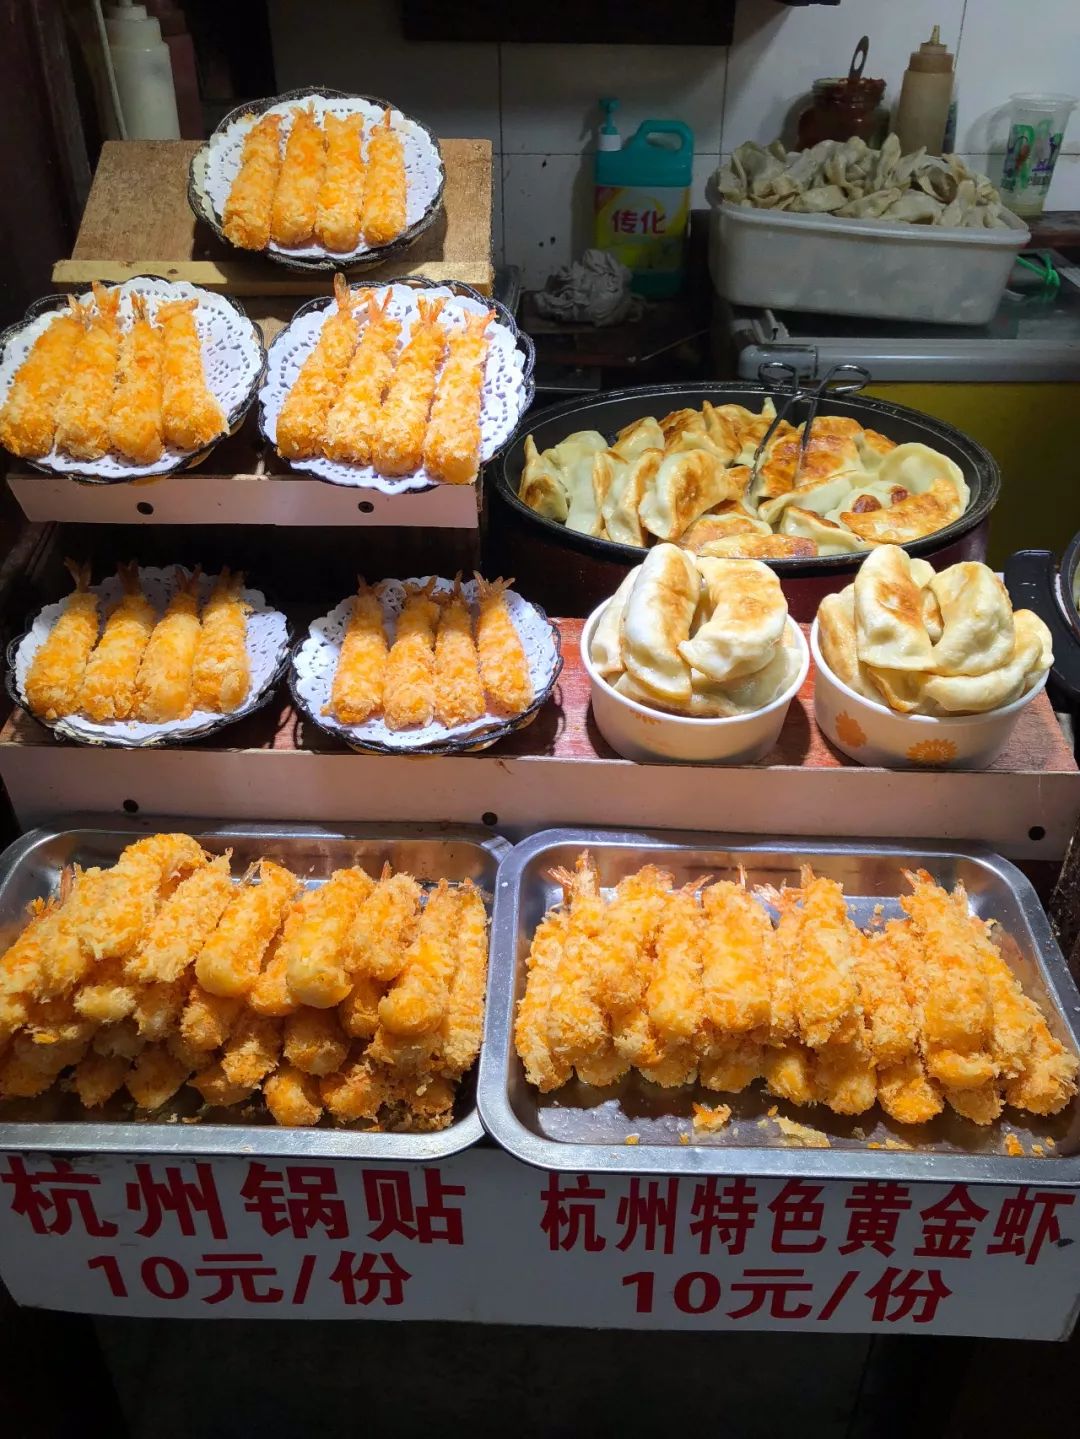 在食物前加上杭州两字就是特色.jpg